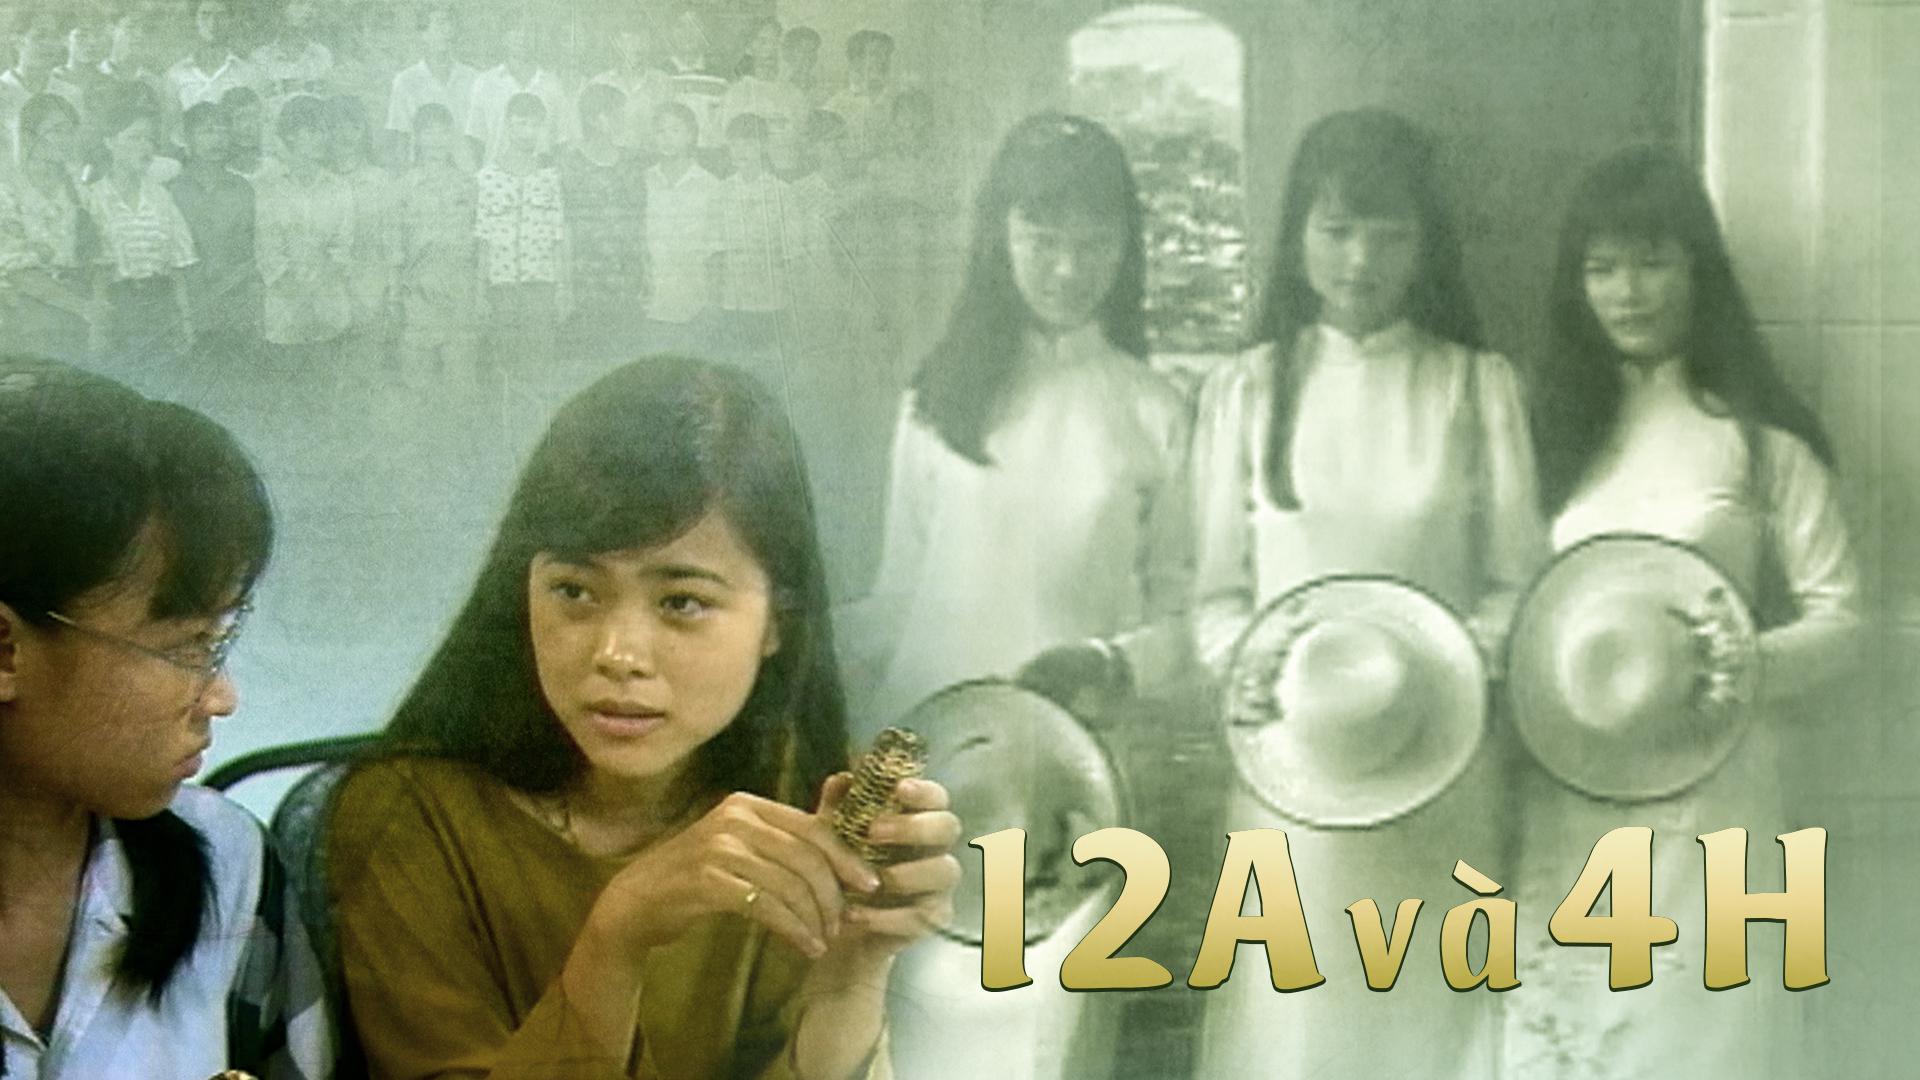 3 bộ phim thanh xuân vườn trường từng làm nên cơn sóng phim truyền hình Việt thập niên 90 - 2000 - Ảnh 1